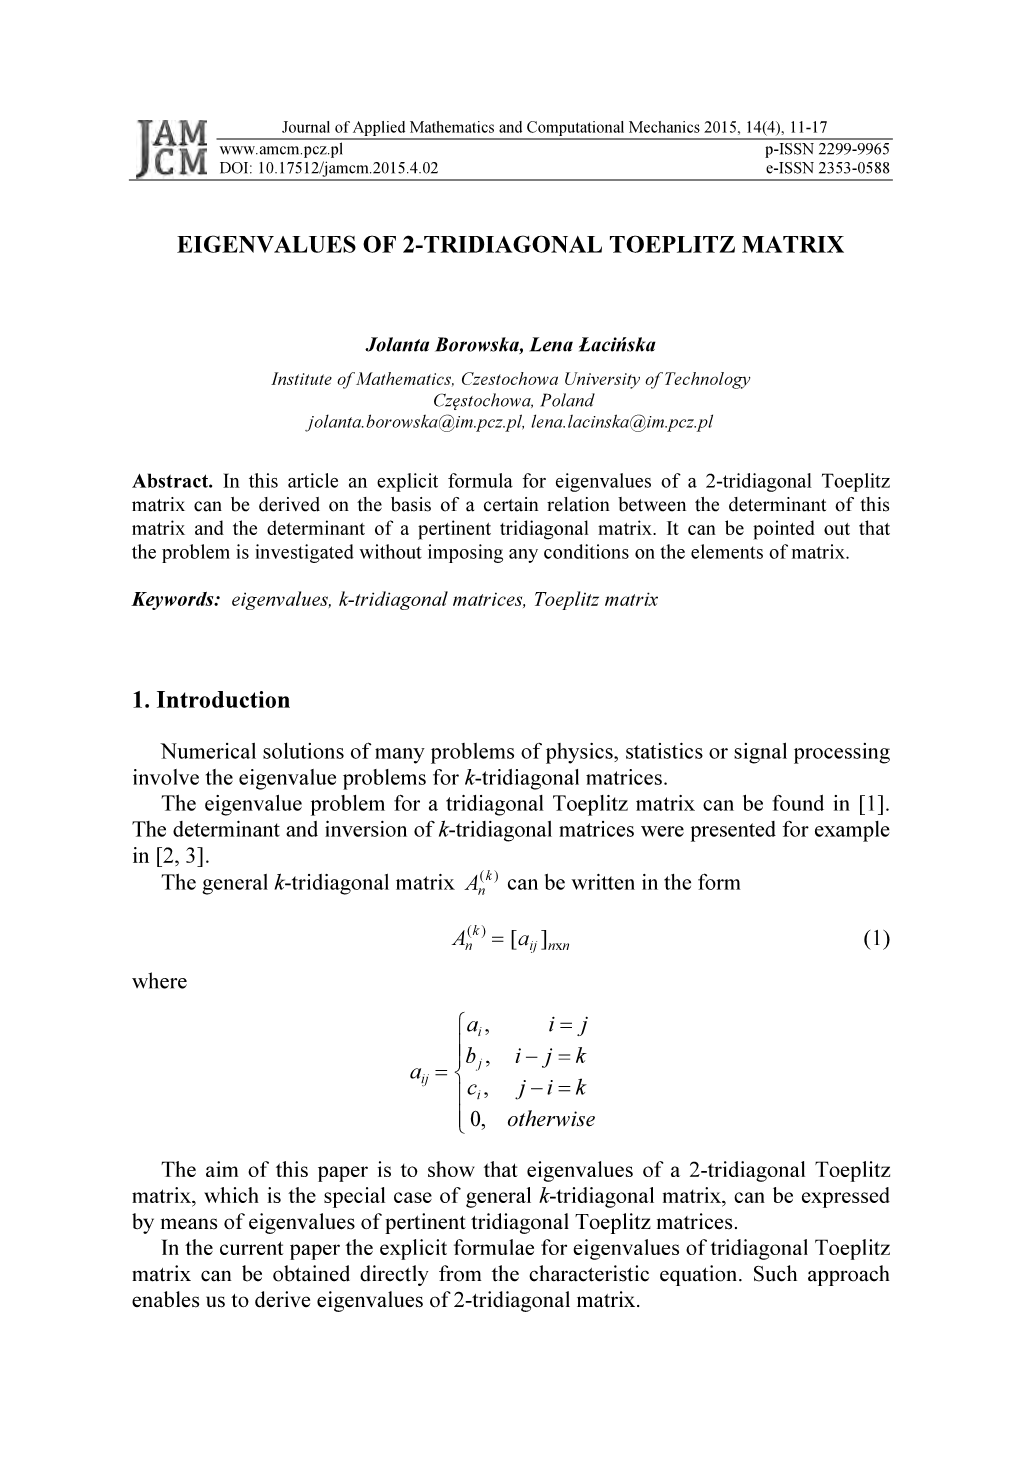 EIGENVALUES of 2-TRIDIAGONAL TOEPLITZ MATRIX 1. Introduction